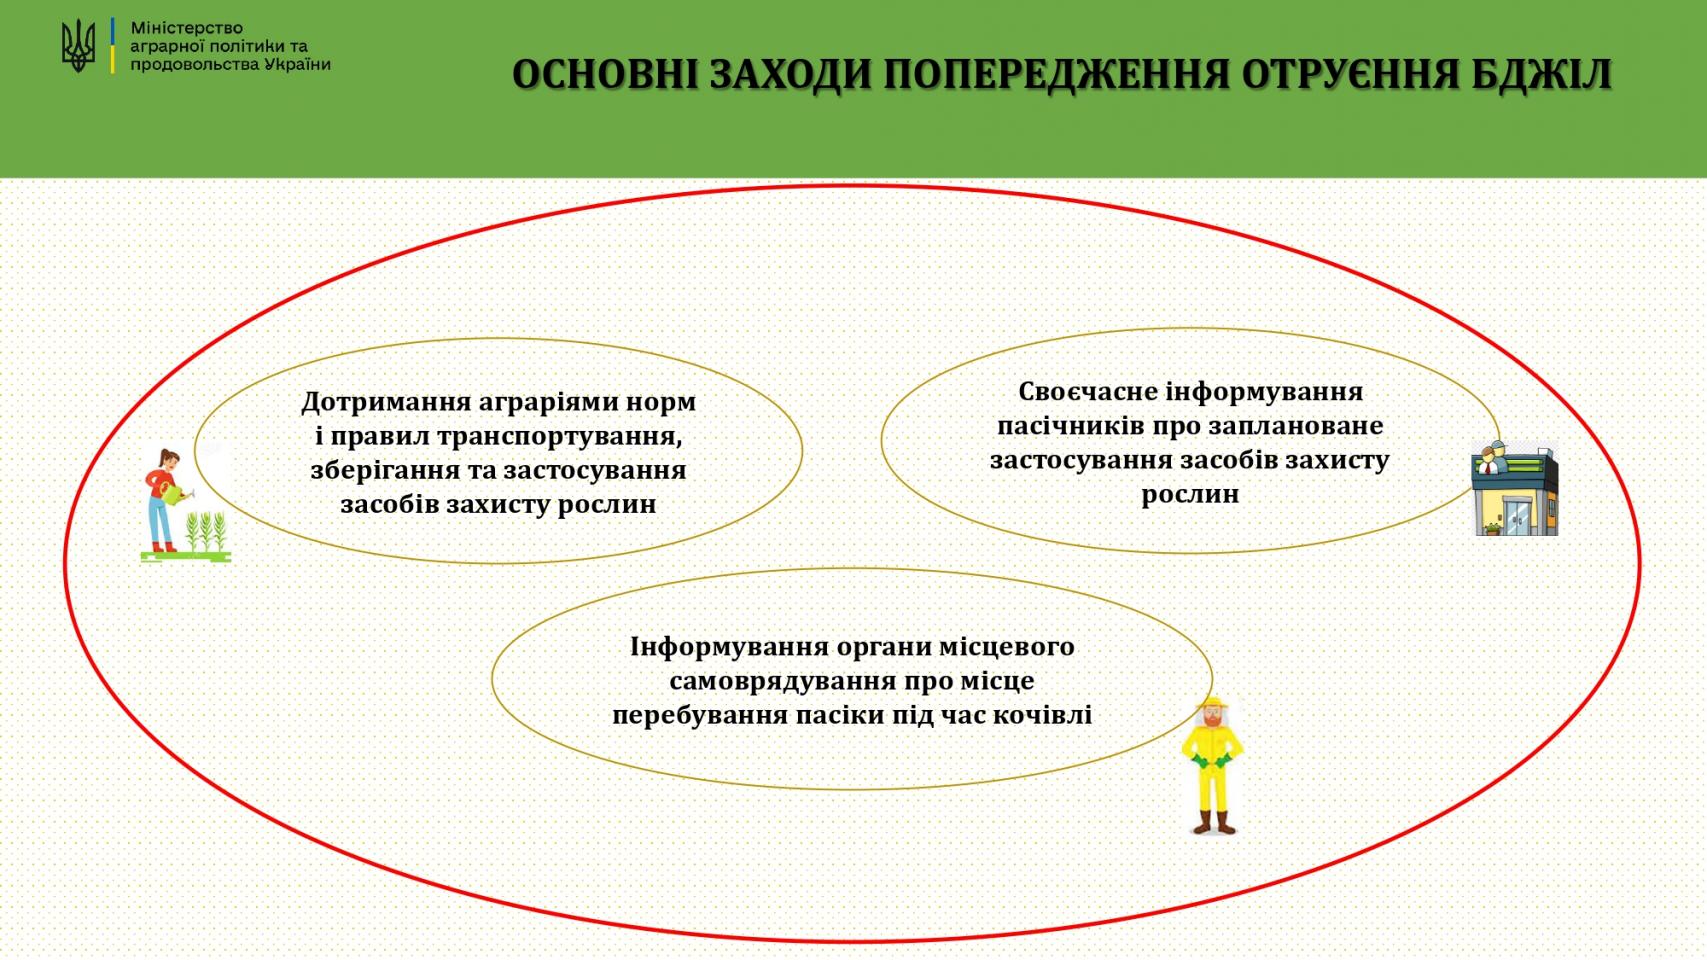 http://dunrada.gov.ua/uploadfile/archive_news/2023/03/27/2023-03-27_2315/images/images-80025.jpg